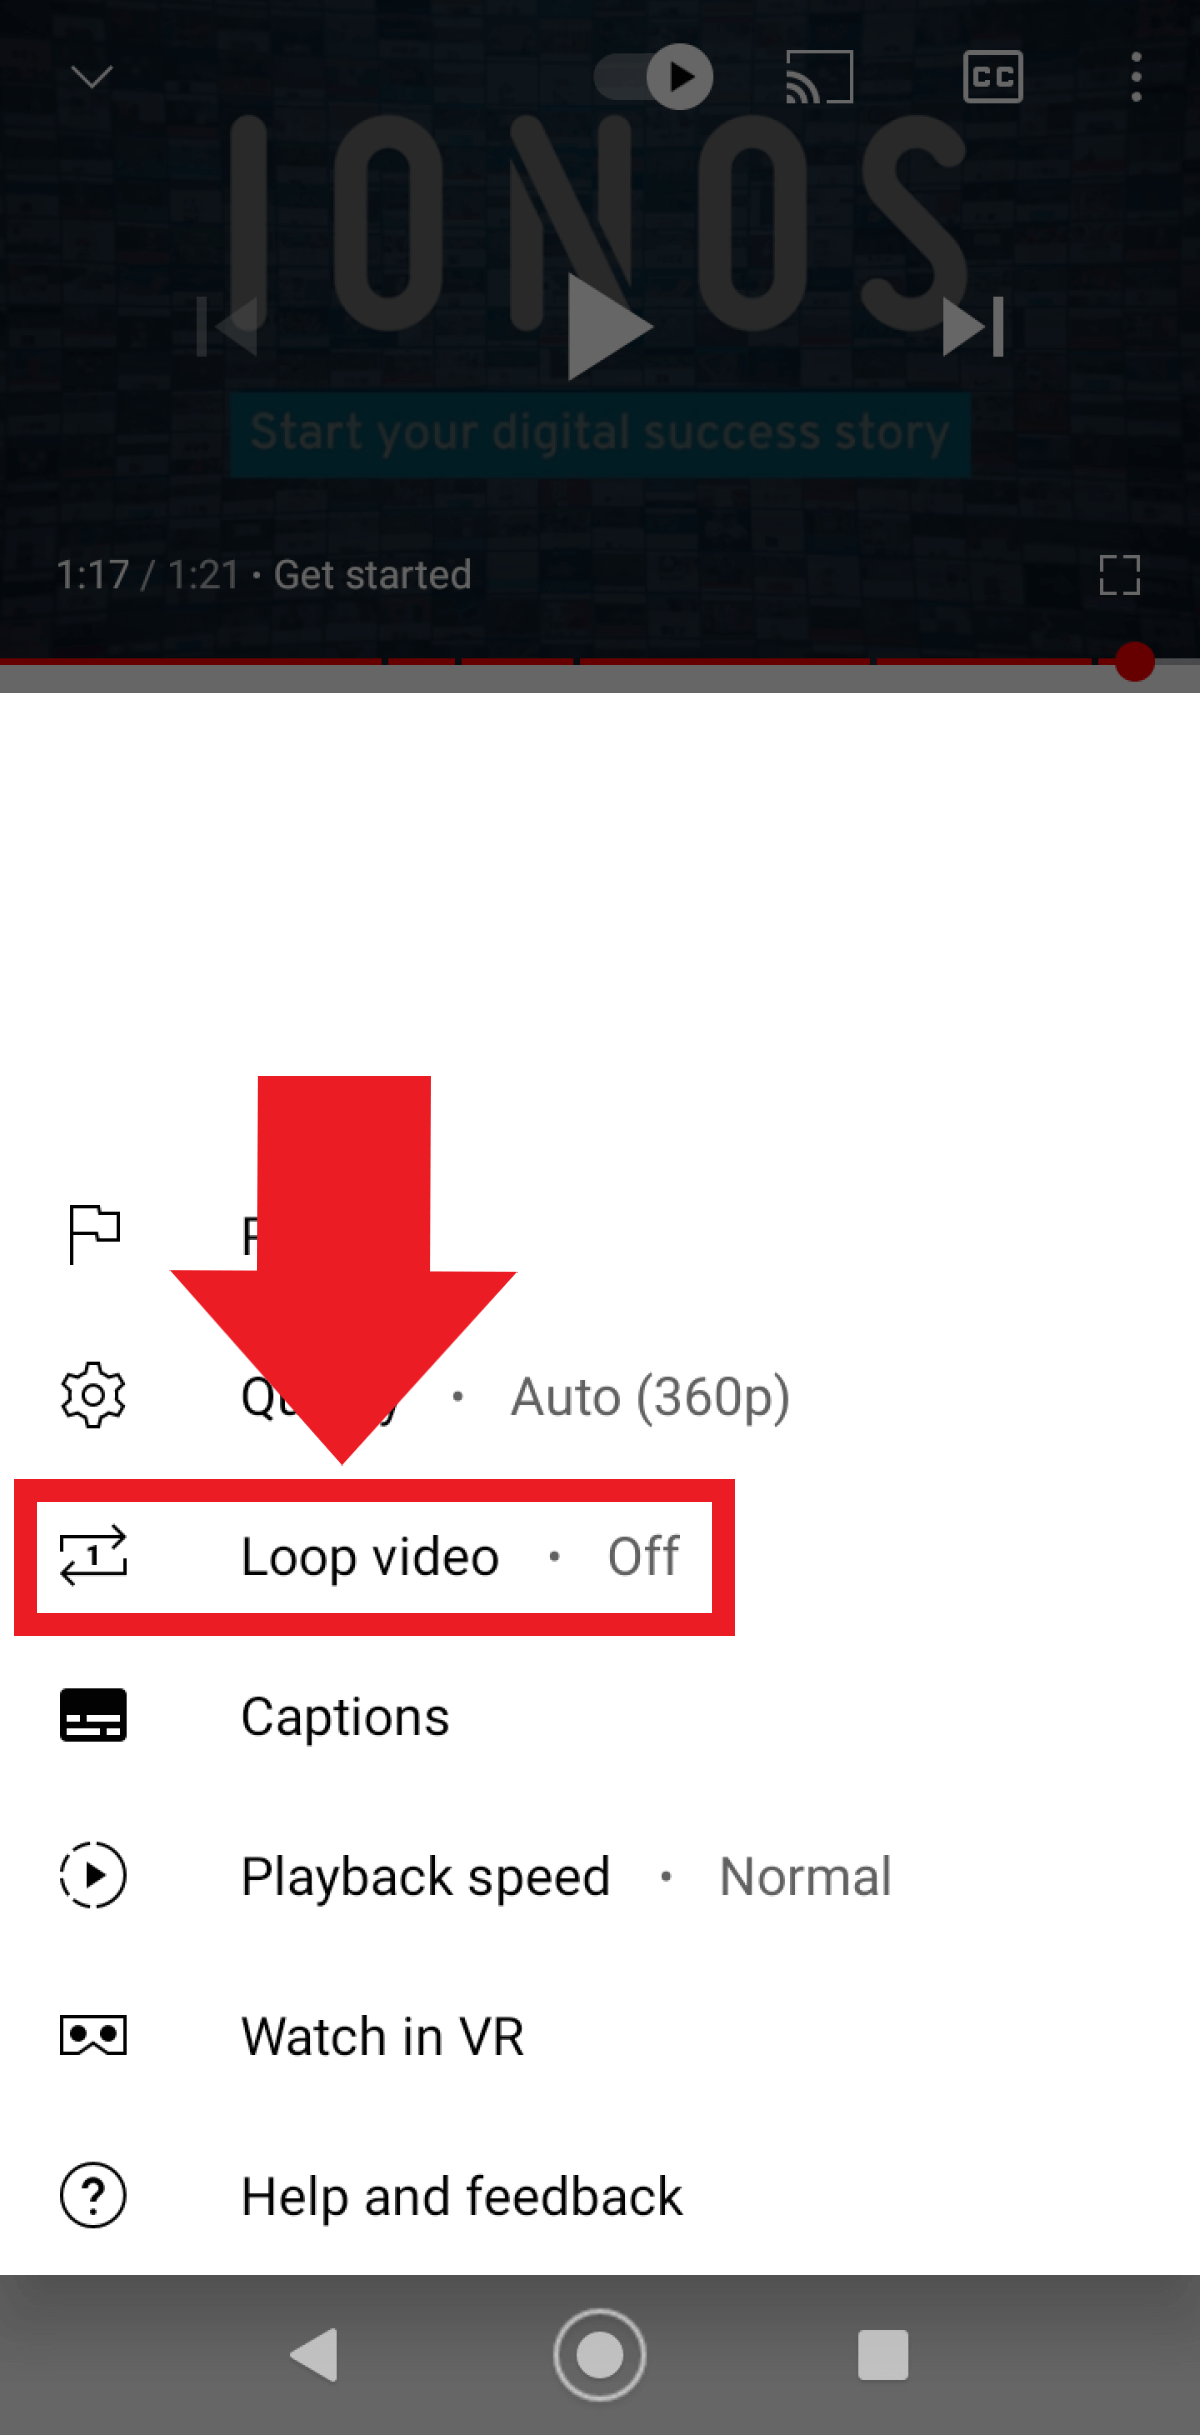 The Loop video setting in Settings